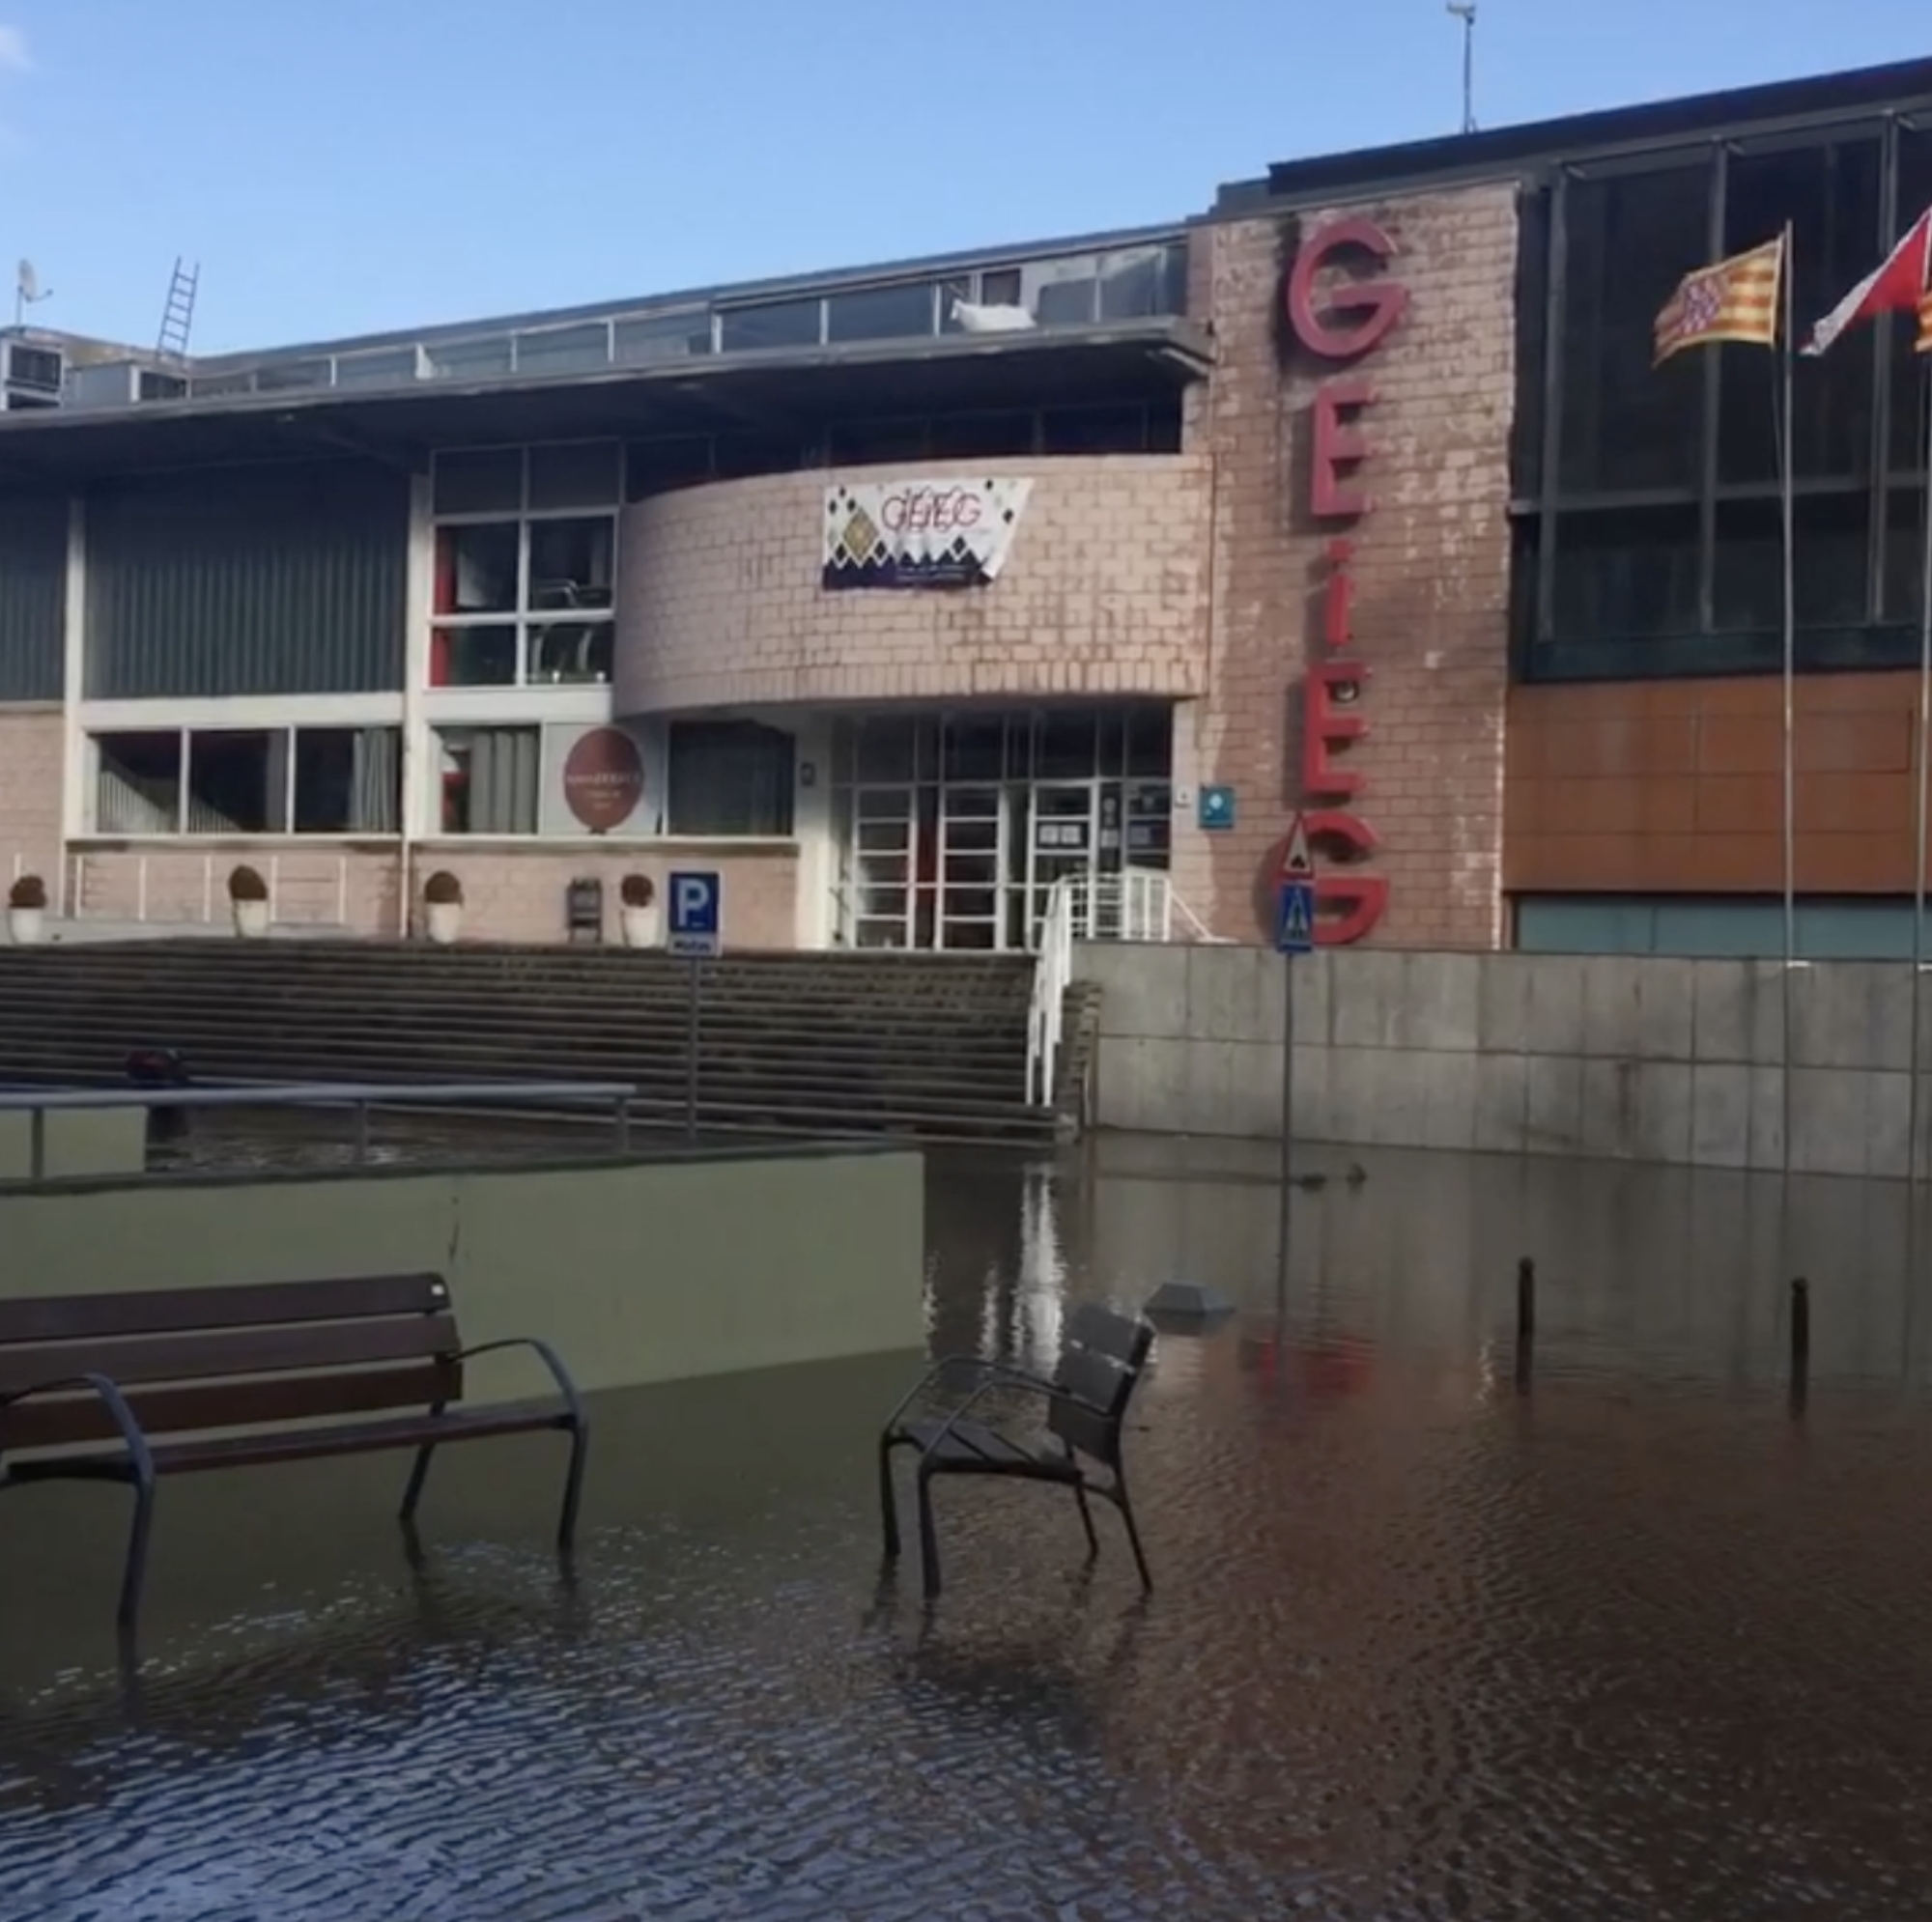 El histórico club GEiEG, en crisis por las inundaciones del Gloria